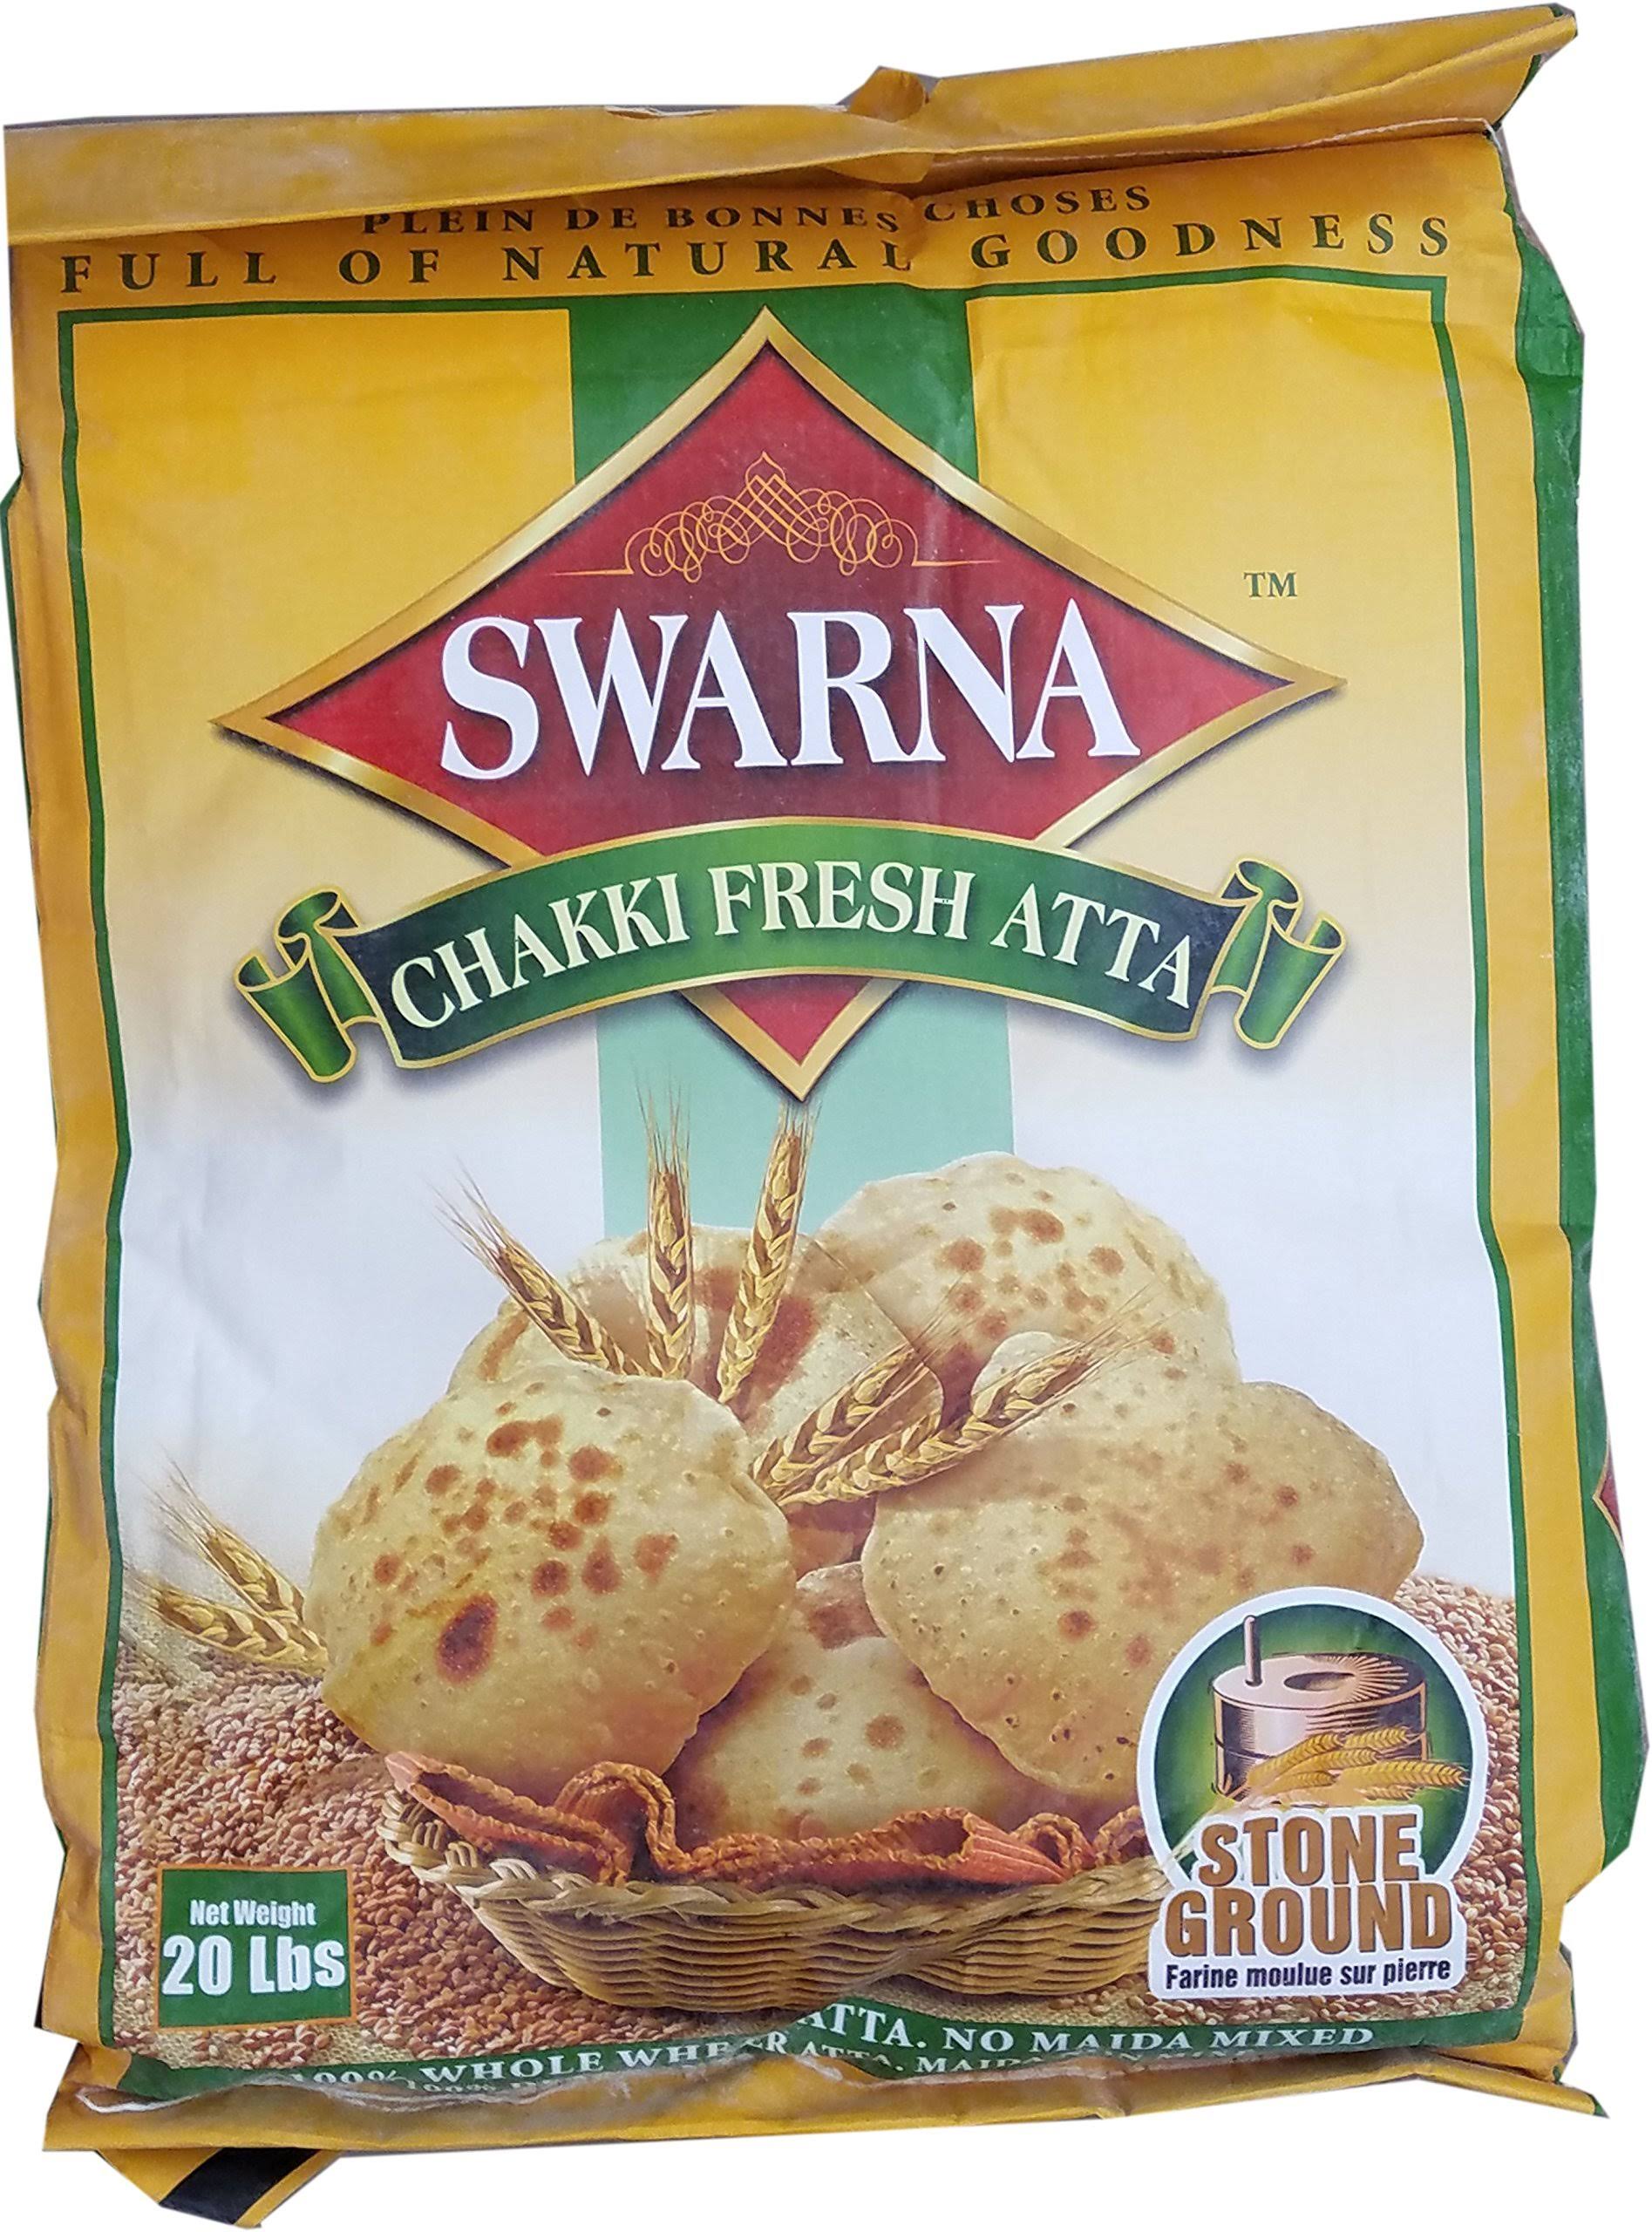 Swarna Chakki Fresh Atta 20 lbs